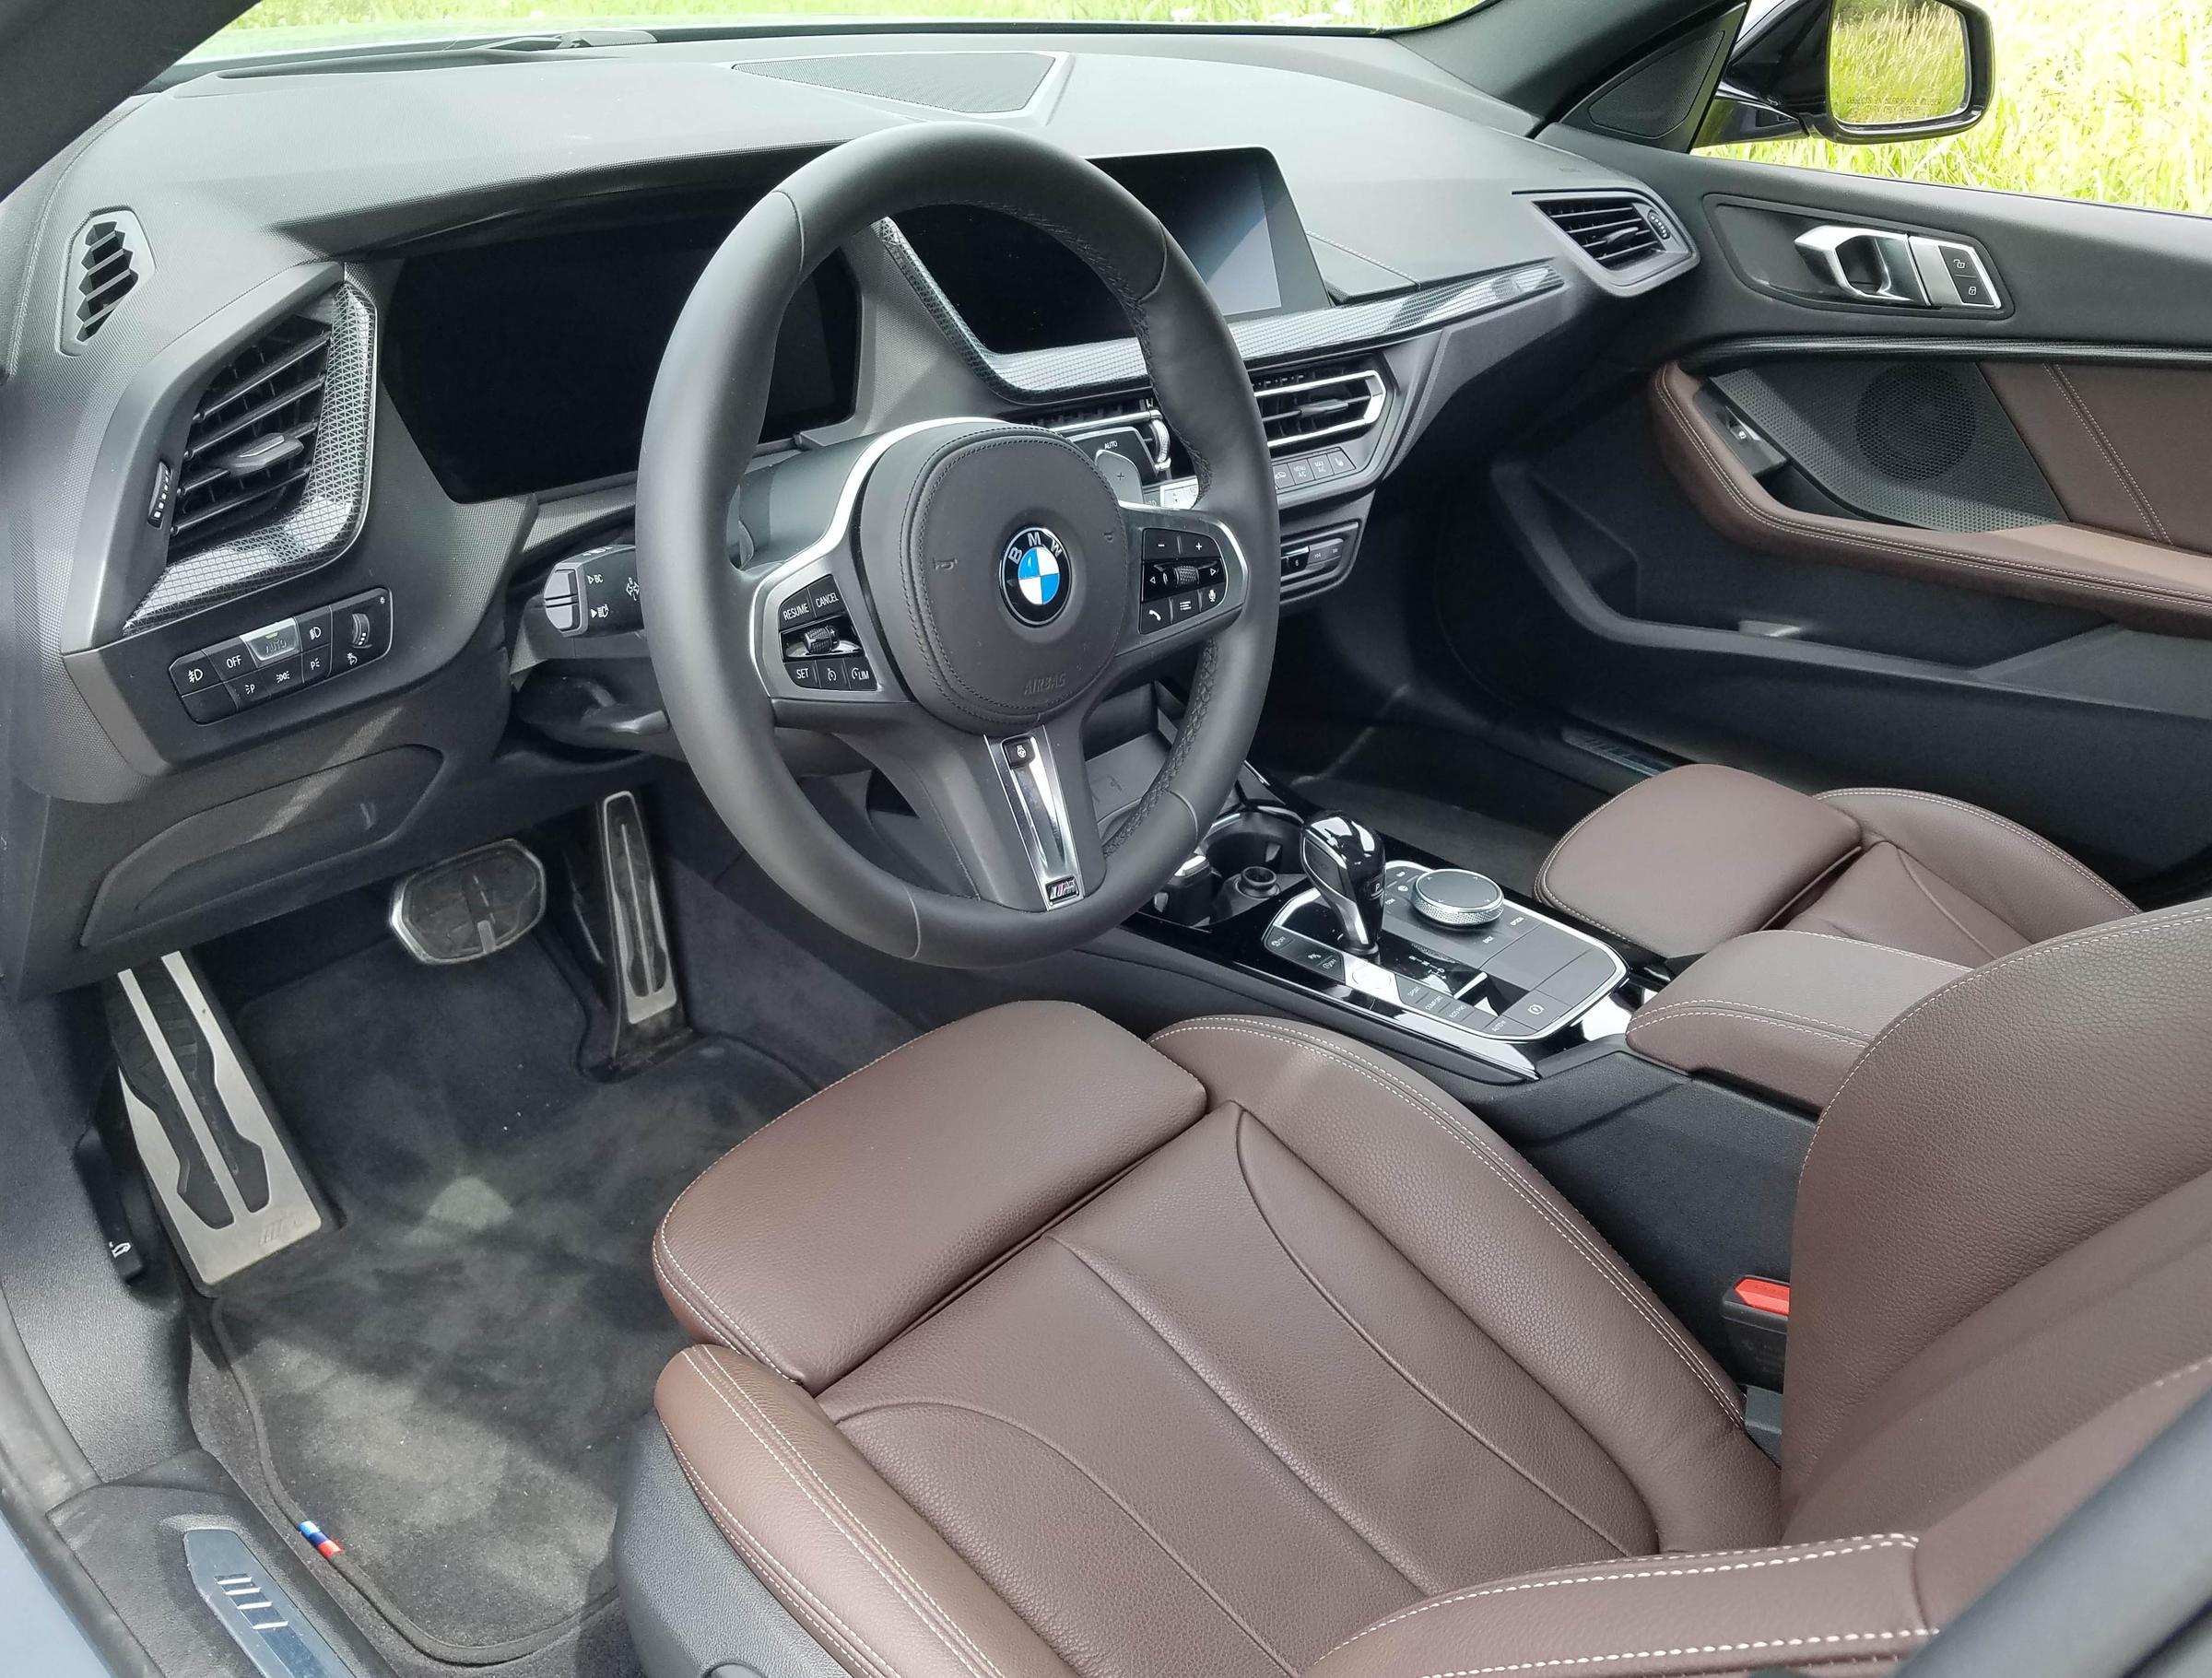 2020 BMW 228i xDrive Gran Coupe Review | WUWM